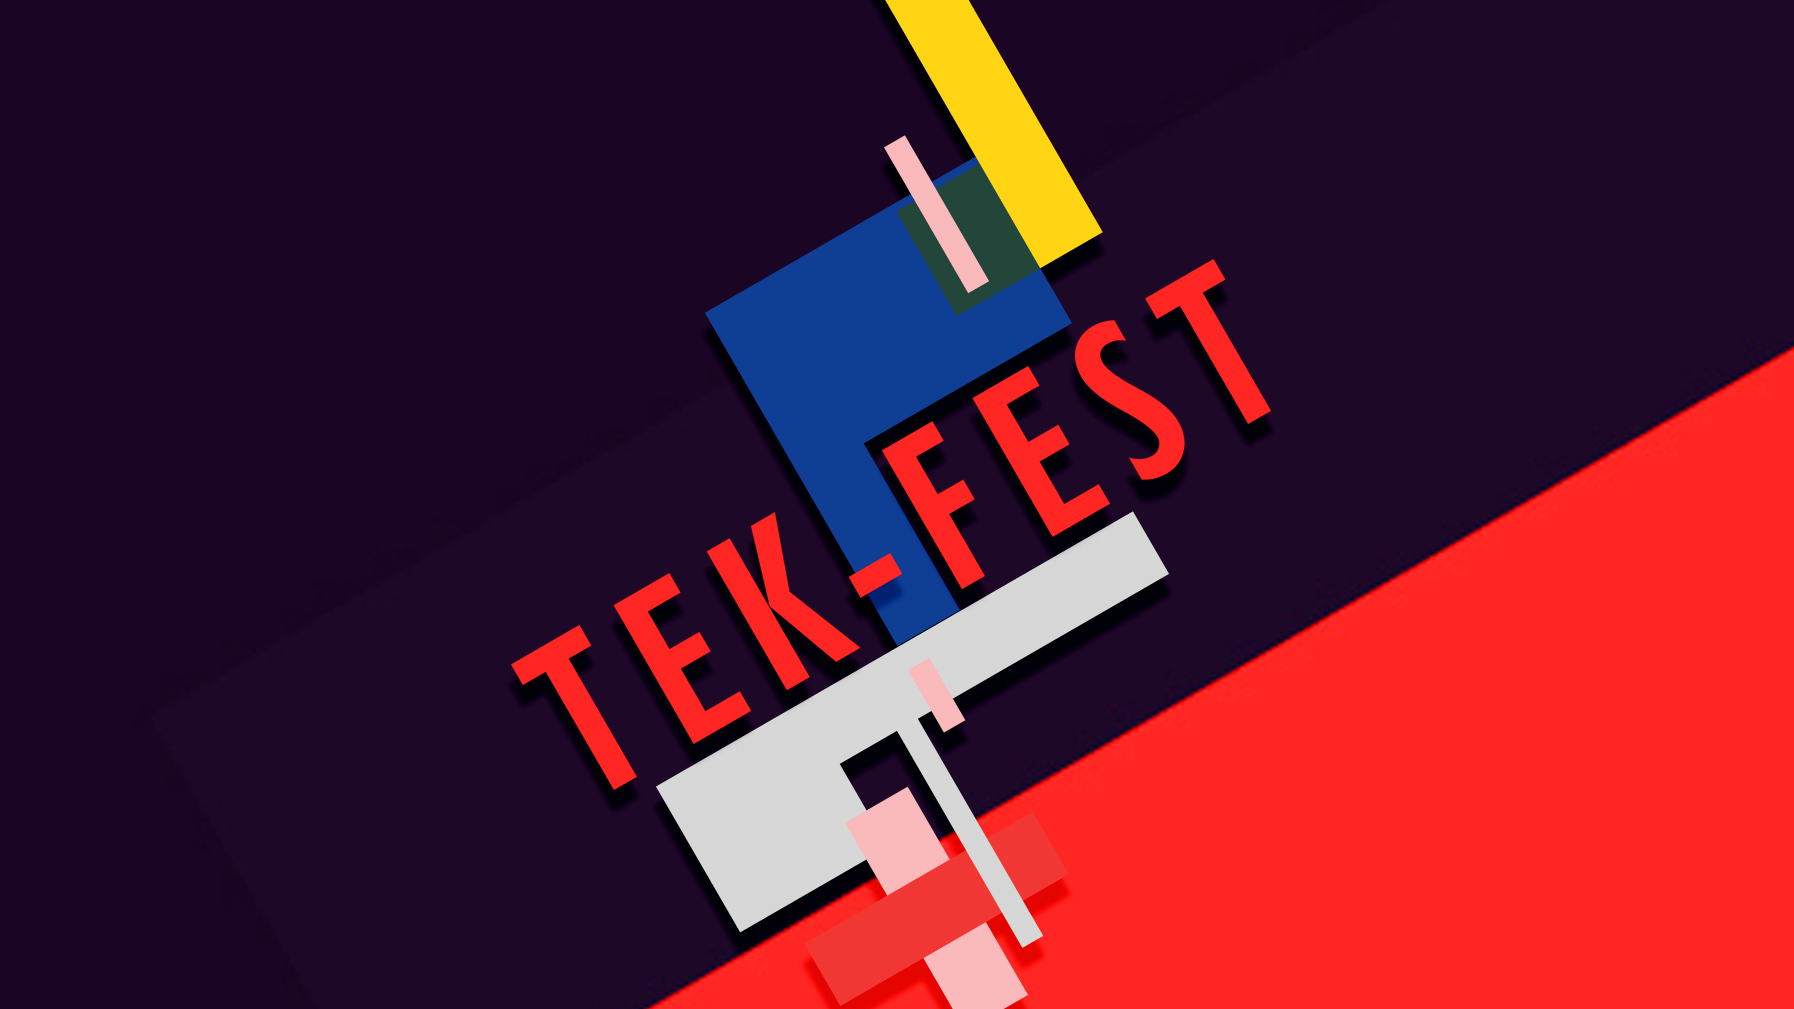 TekFest 2016